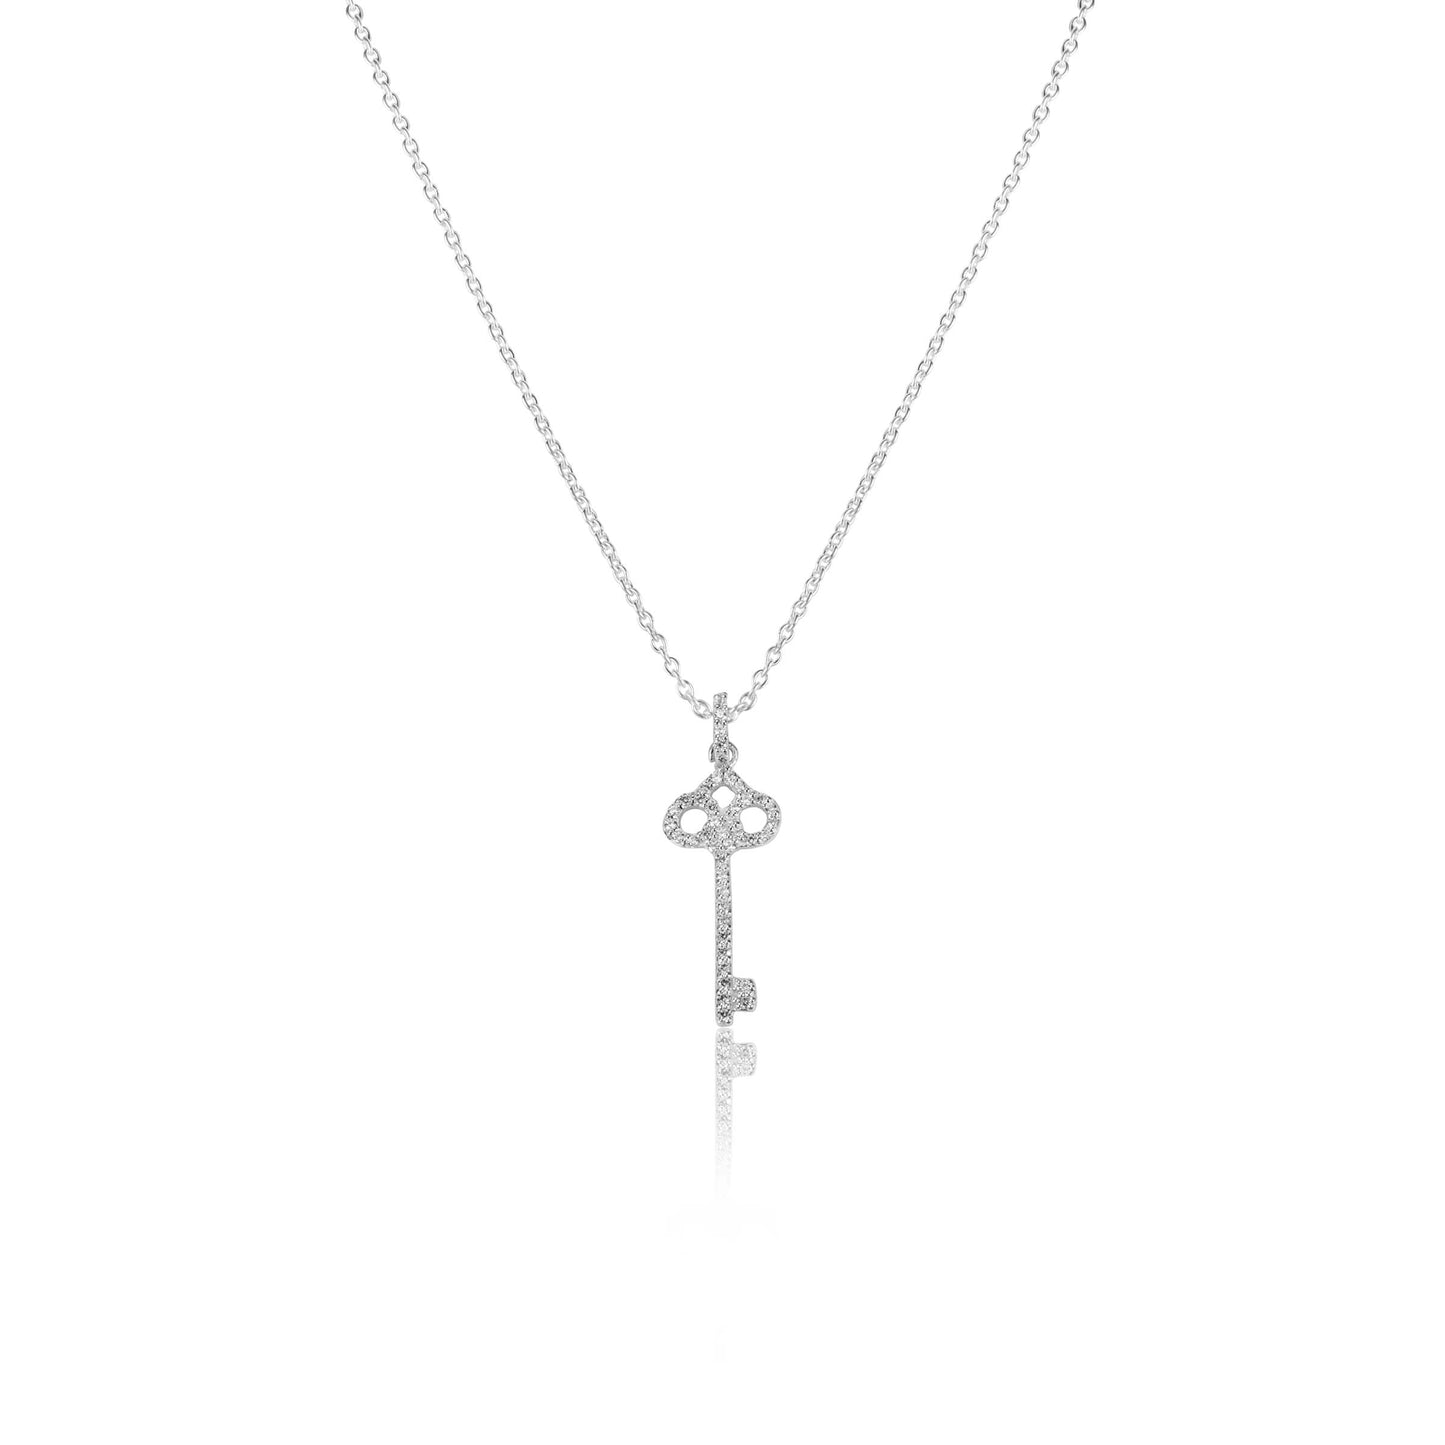 Silver Necklace Diamond Key Necklace Image 1